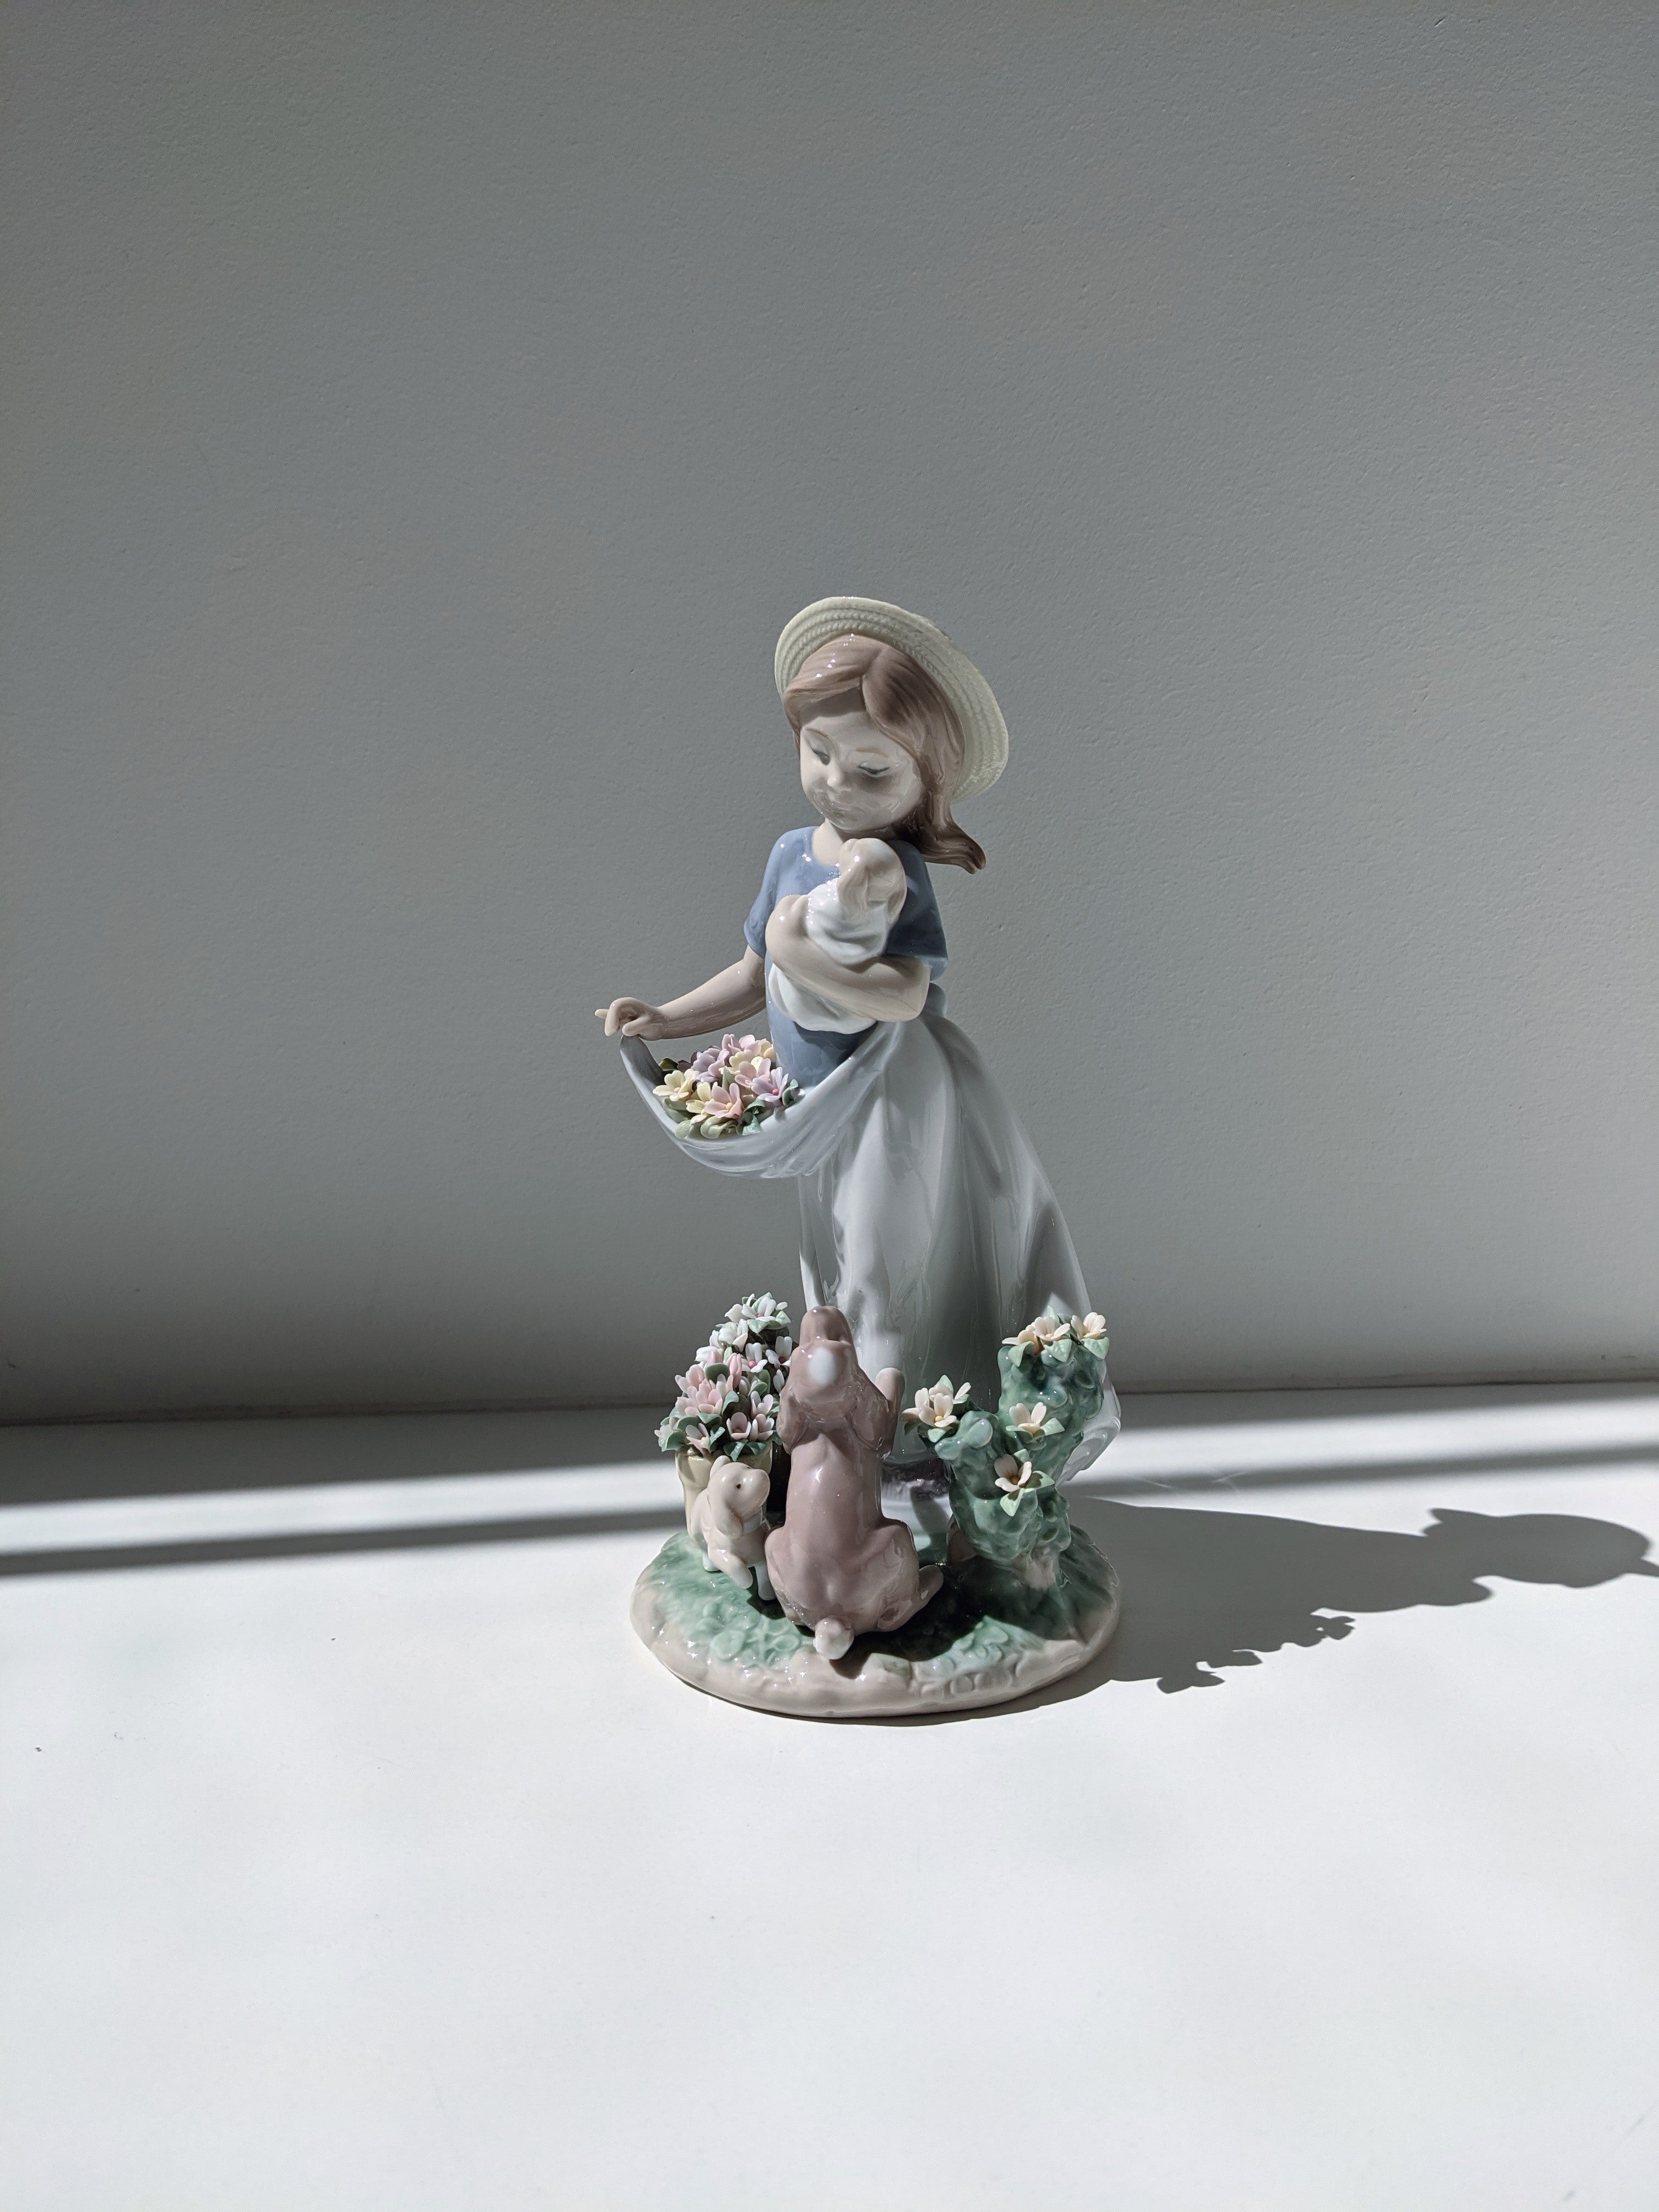 A Romp in the Garden Girl Sculpture – FormFluent